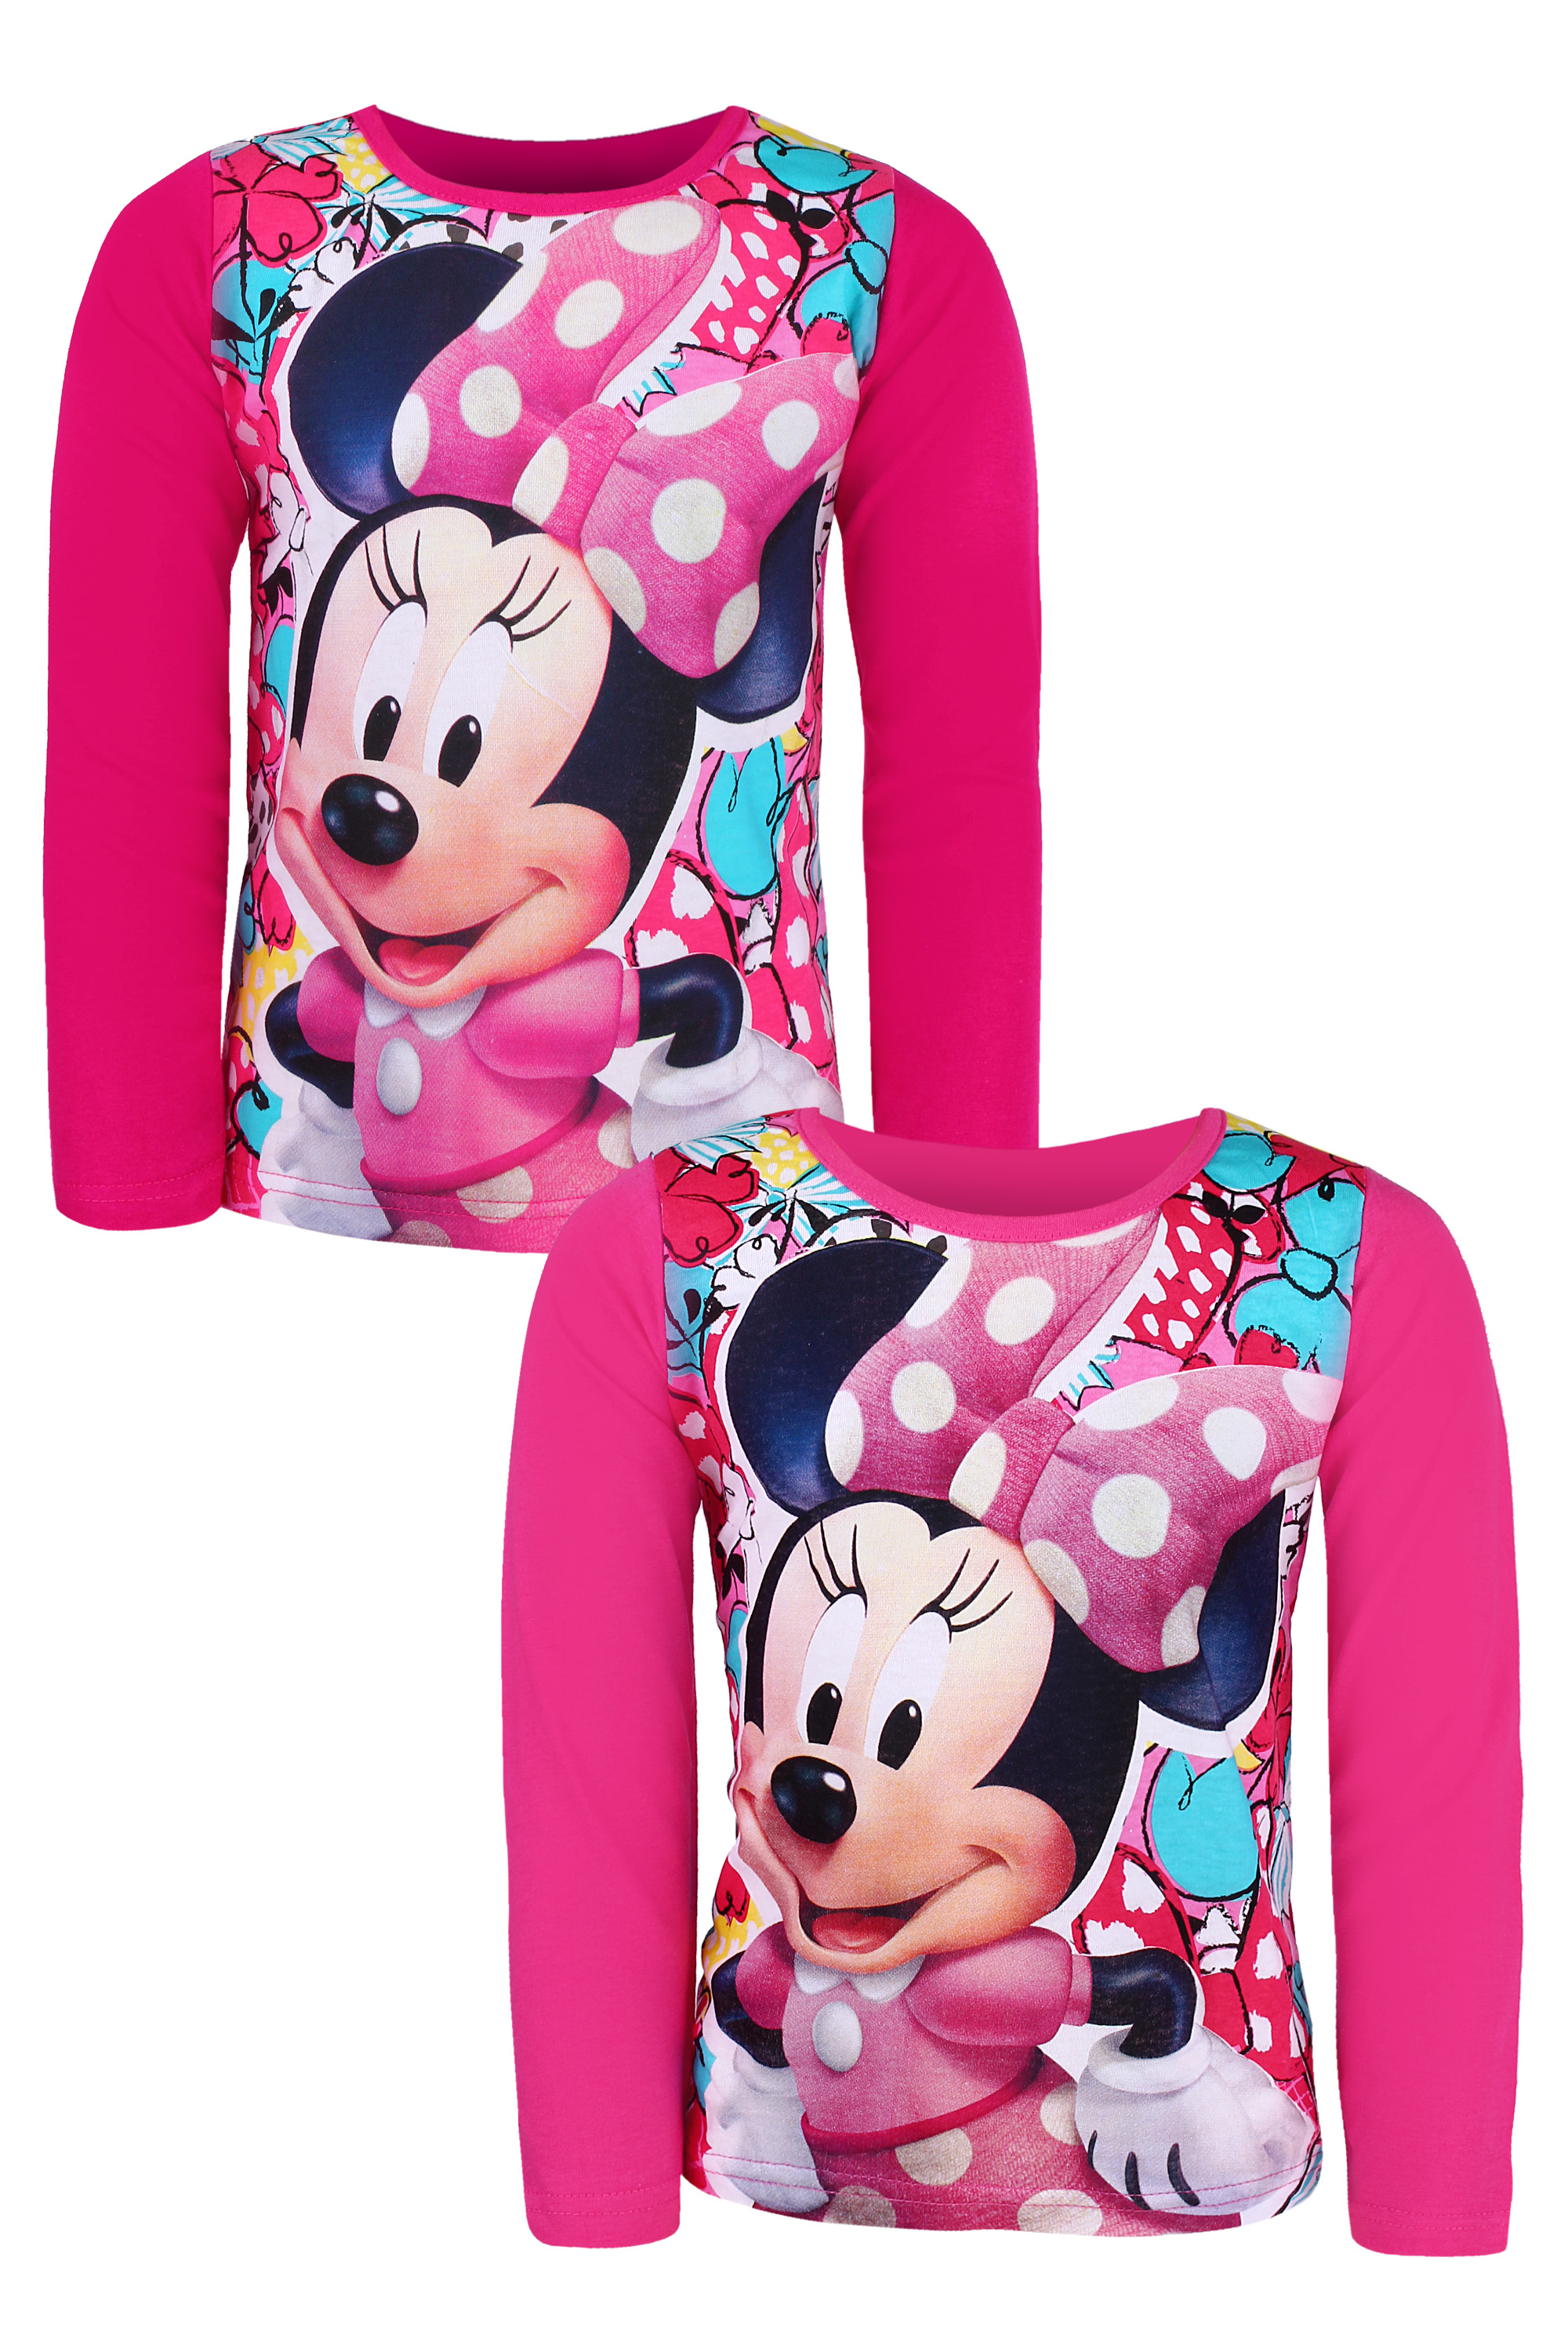 Minnie Mouse - licence Dívčí triko - SETINO Minnie ST-71, růžová Barva: Růžová světlejší, Velikost: 104